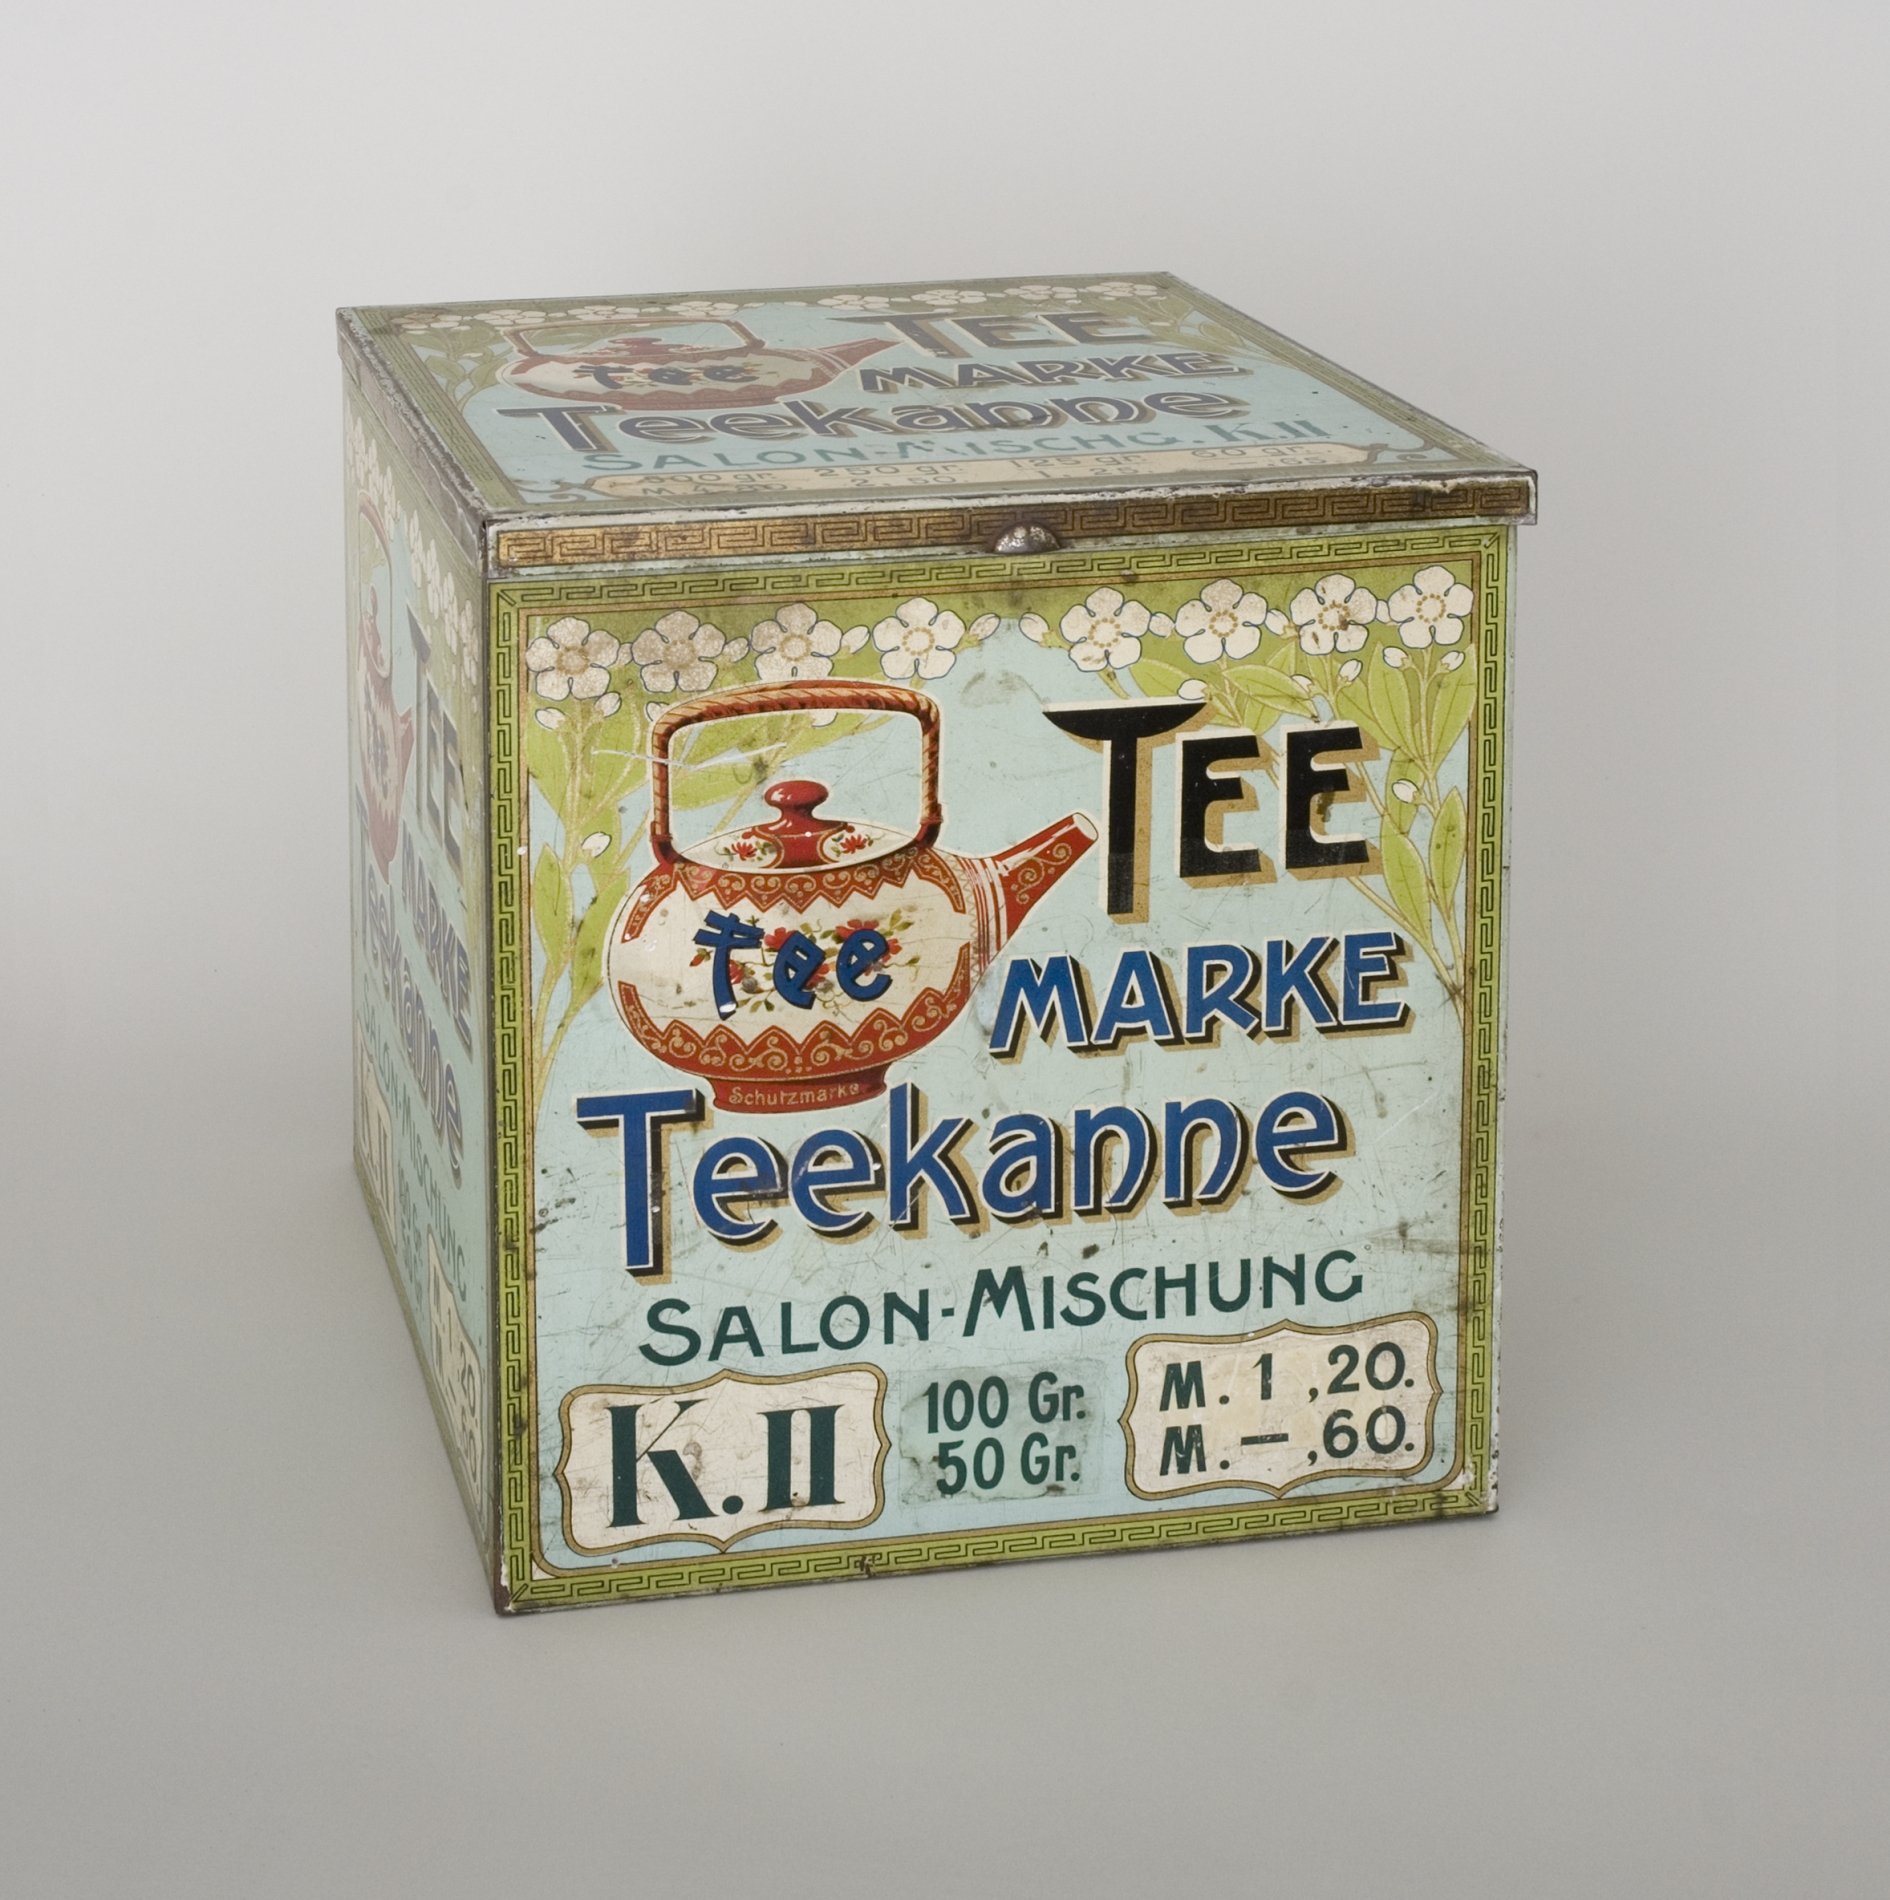 Vorratsdose für Tee der "Marke Teekanne" (Stiftung Domäne Dahlem - Landgut und Museum, Weiternutzung nur mit Genehmigung des Museums CC BY-NC-SA)